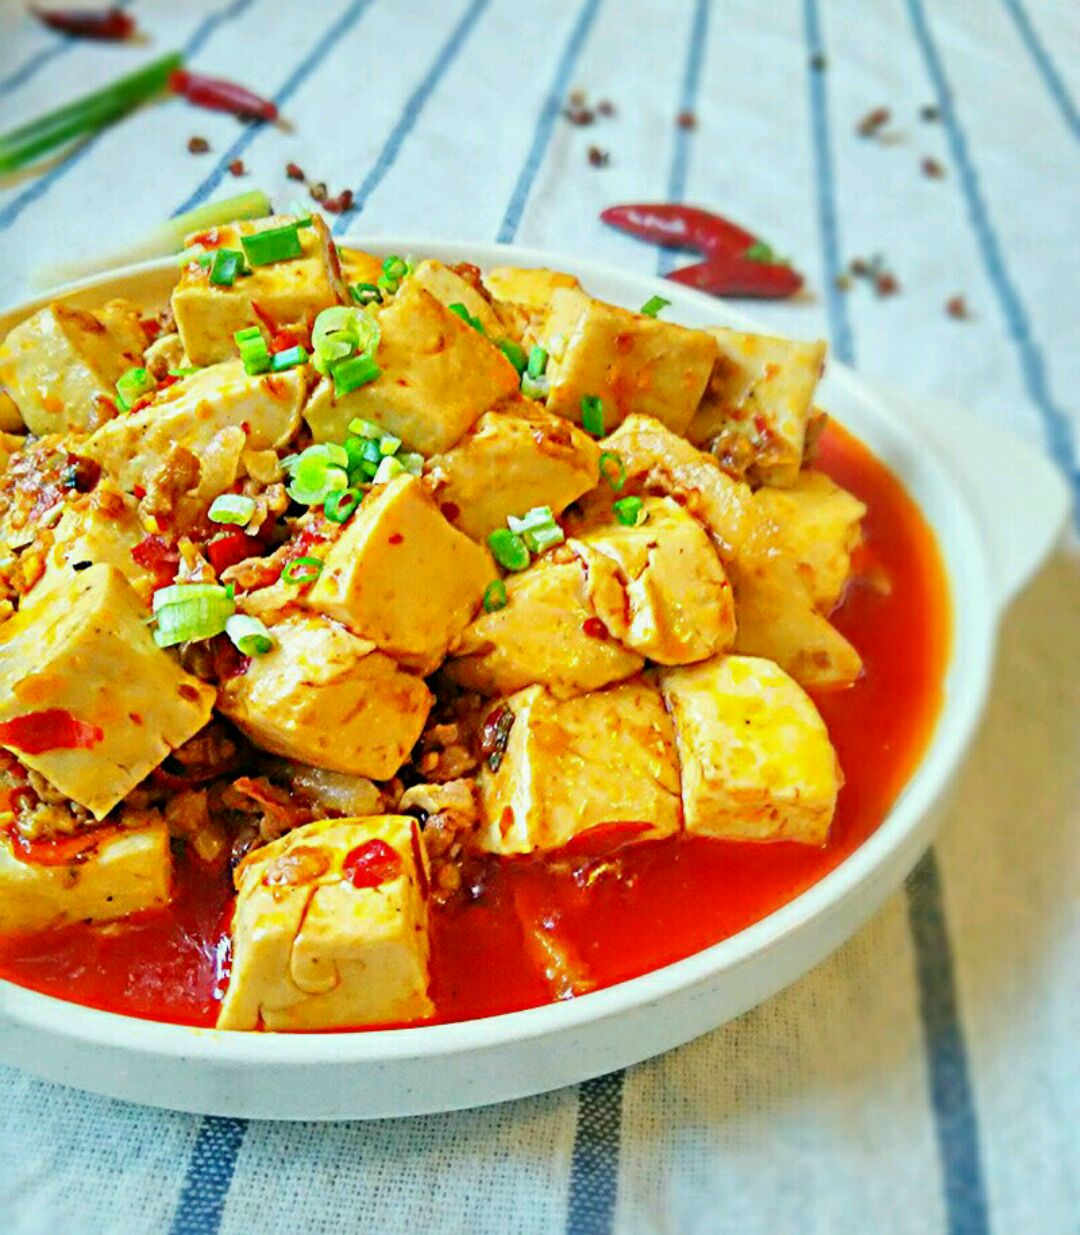 怎么做的麻婆豆腐好吃啊?_烹饪美食_奇飞知识网